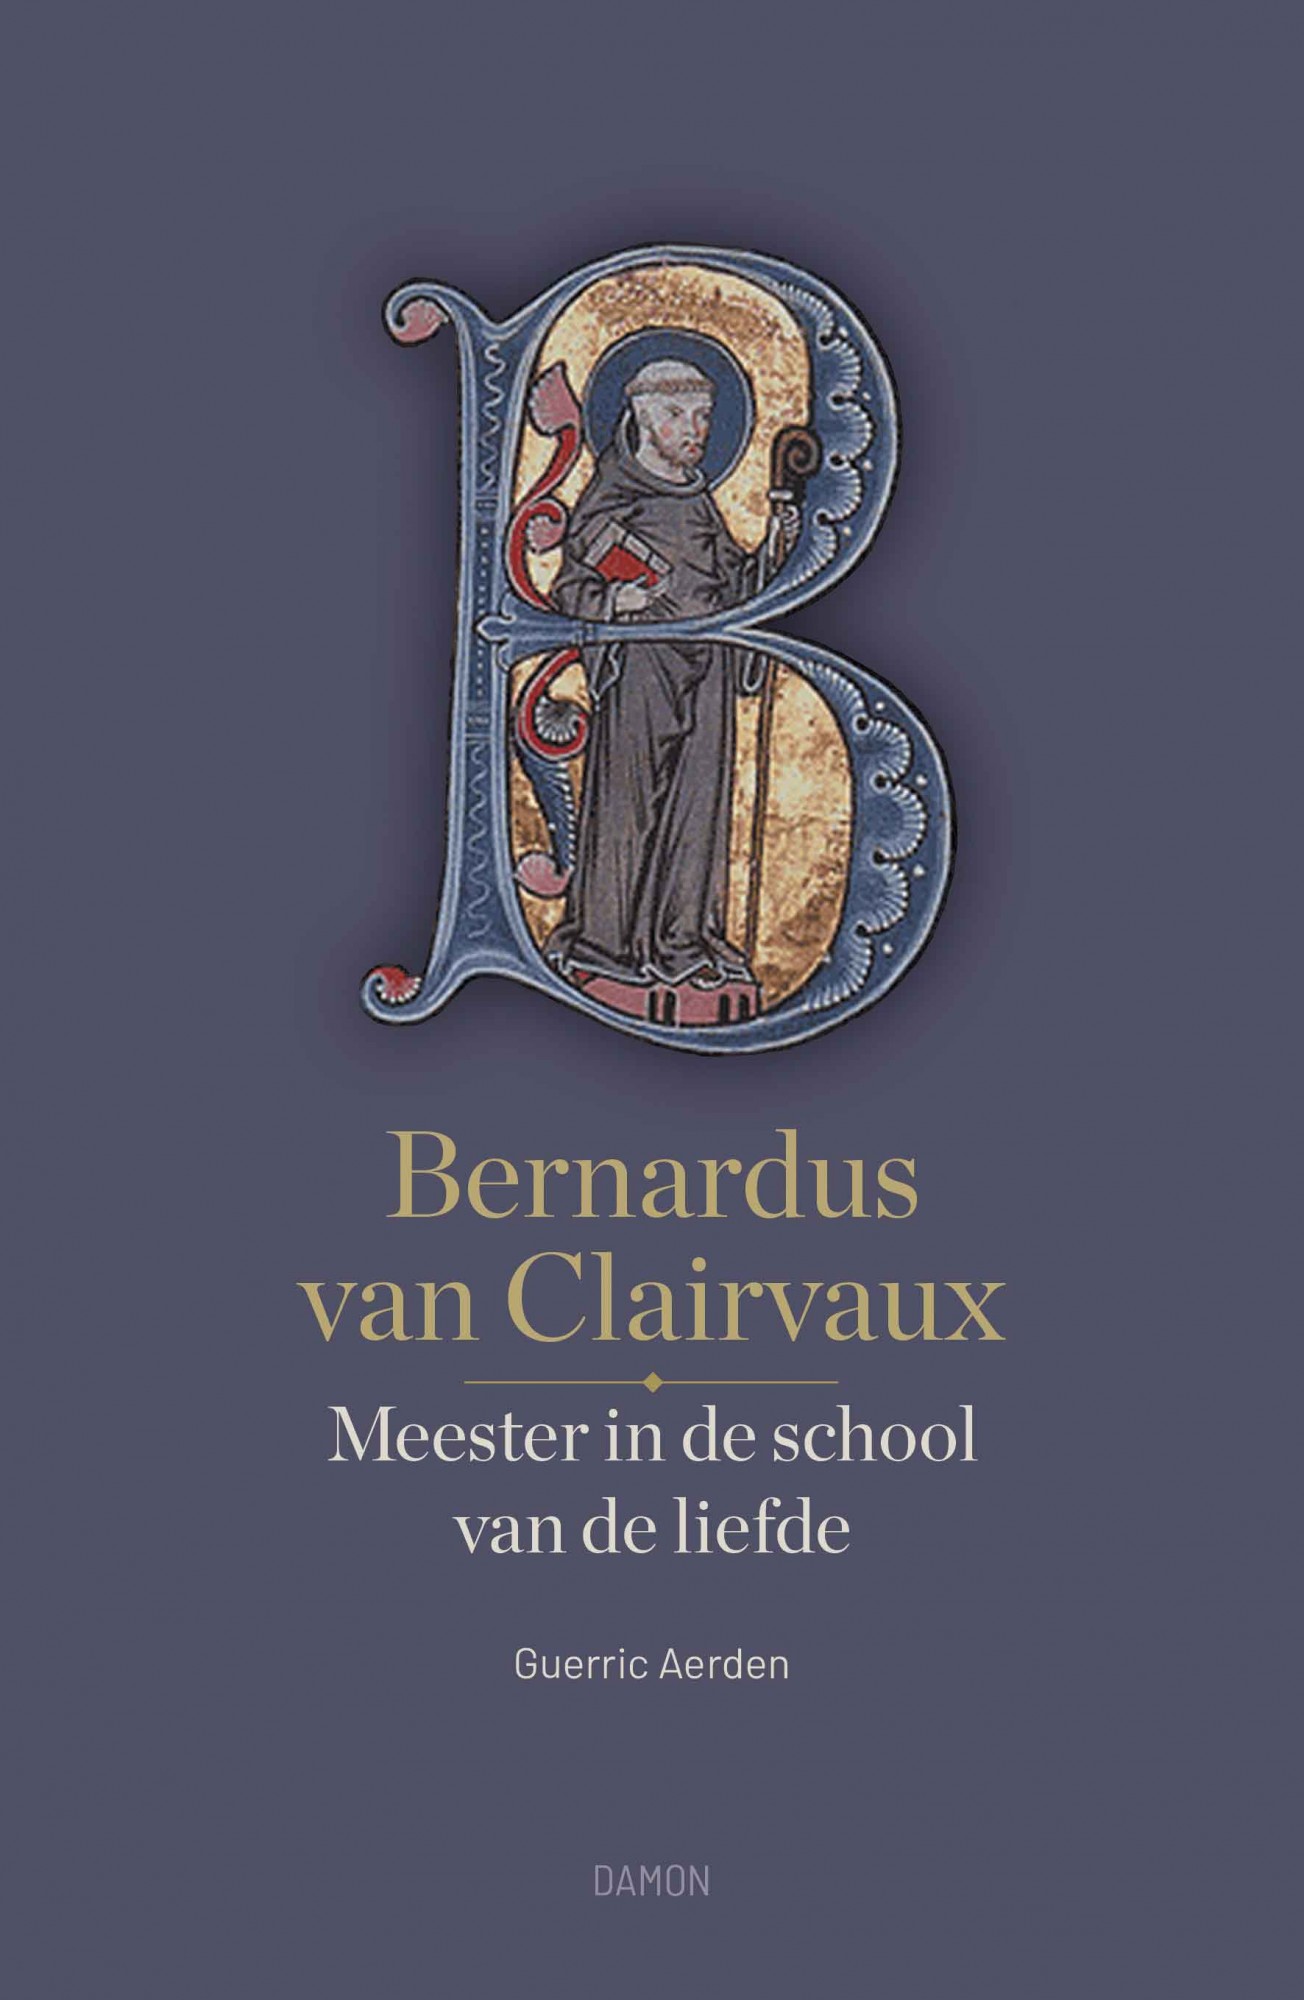 Bernardus van Clairvaux, Meester in de school van de liefde